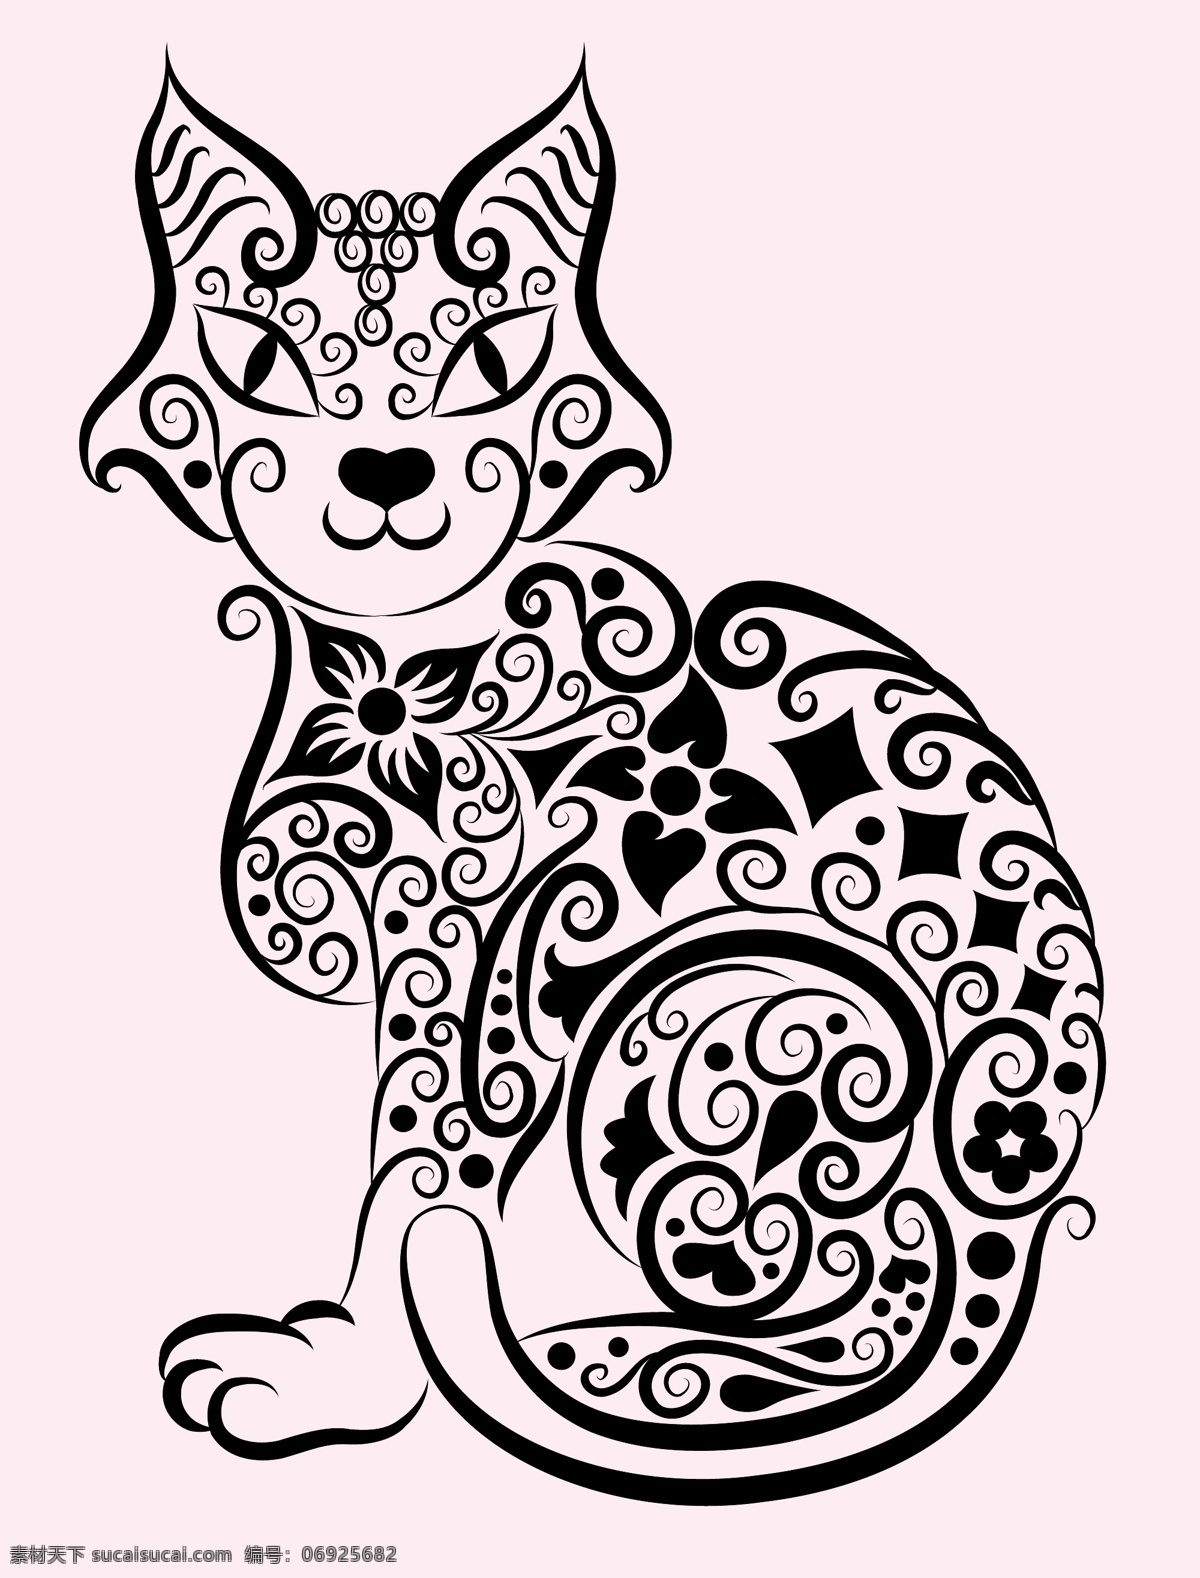 花纹 猫 矢量 刺青 动物 剪影 矢量素材 手绘 图案 图形 纹身 线稿 线条 矢量图 其他矢量图